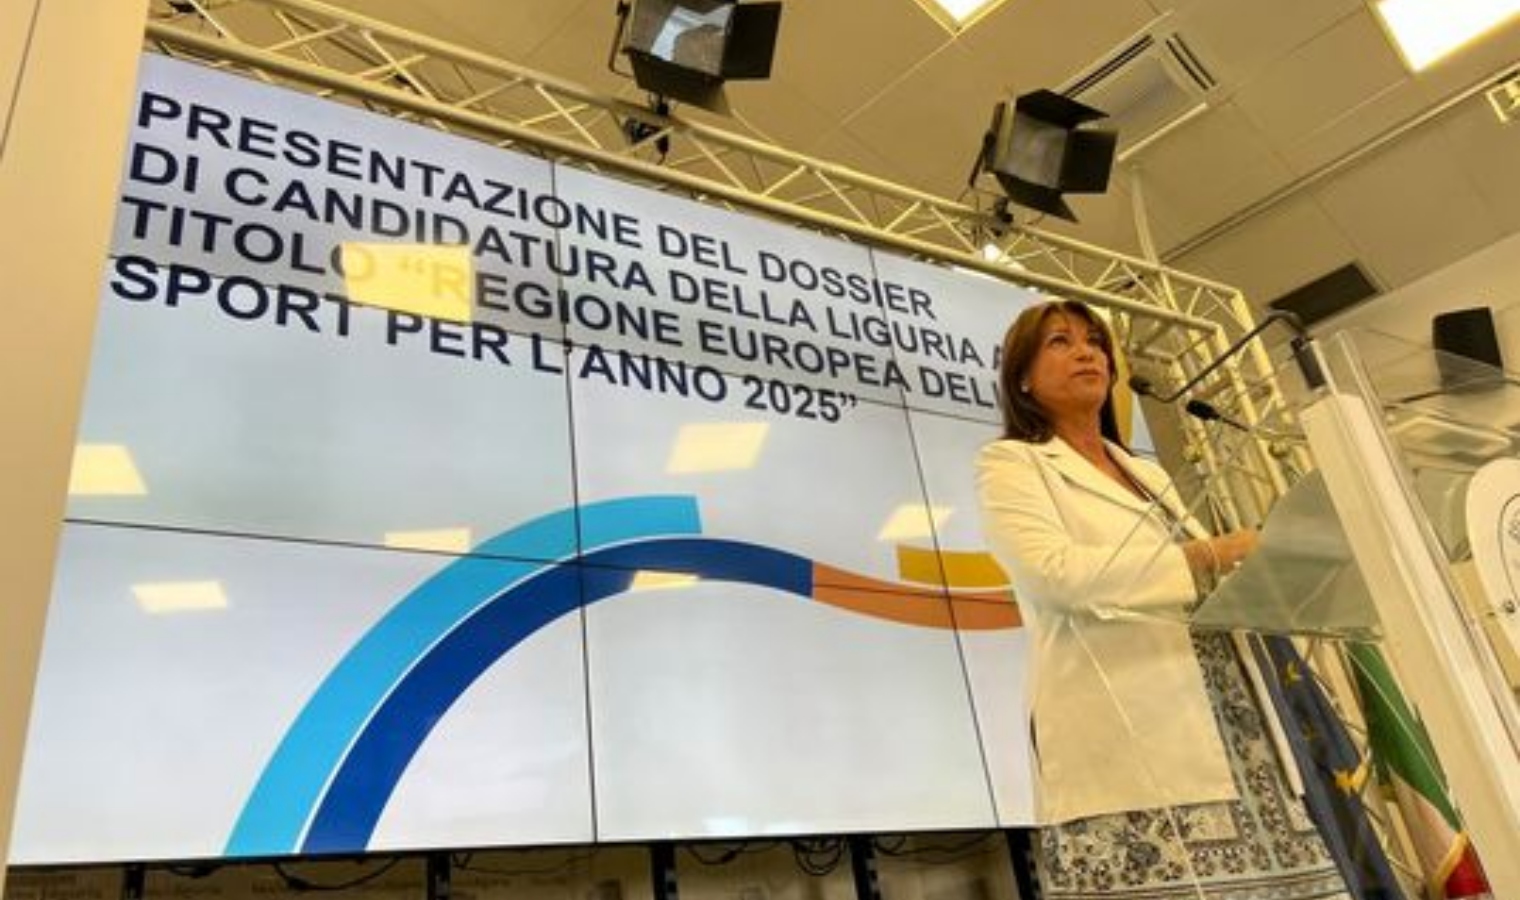 La Liguria si candida a regione europea dello sport 2025 sulla scia di Genova e Ocean Race